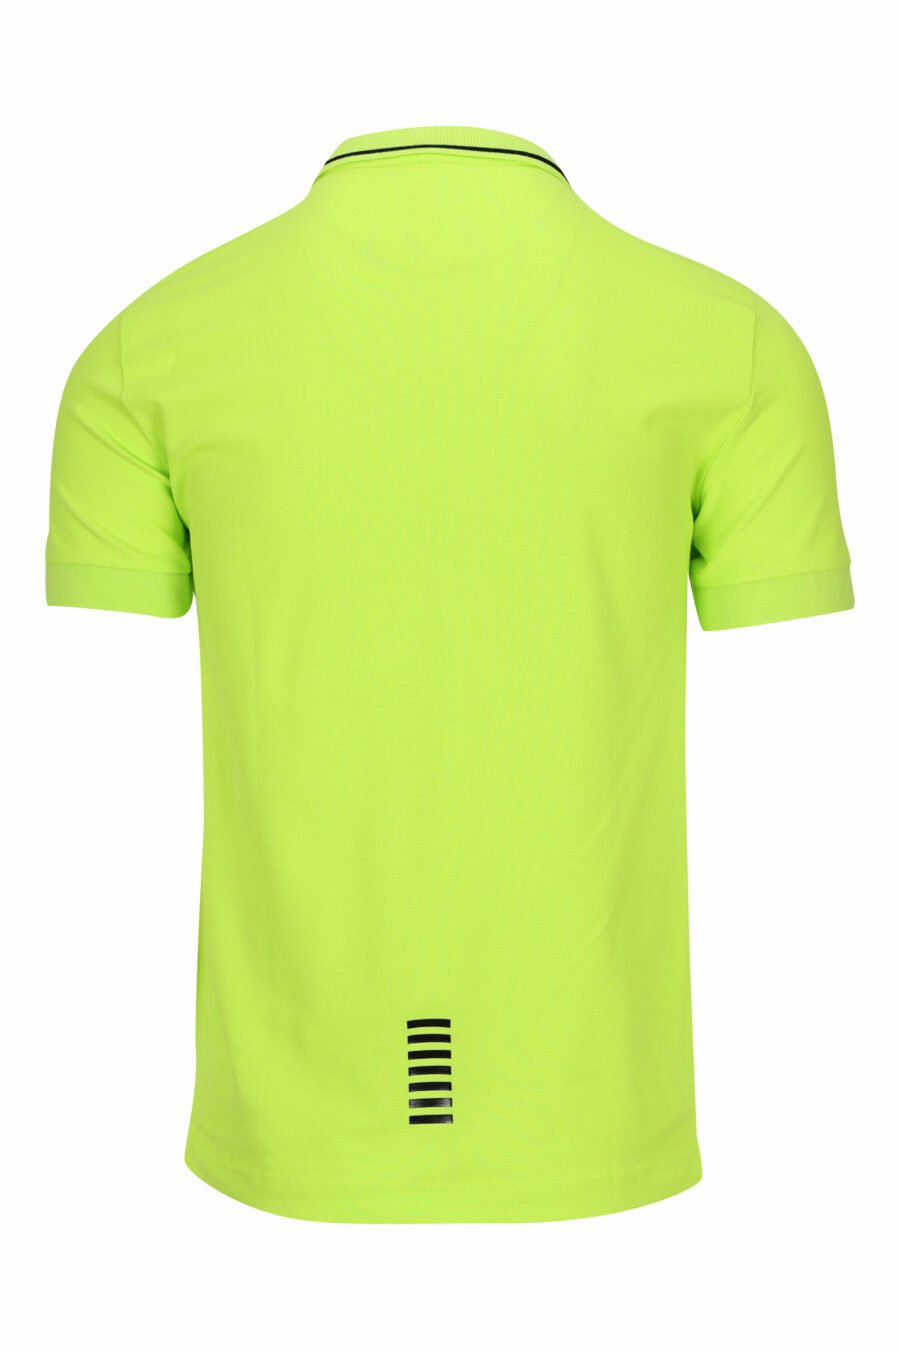 Limonengrünes Poloshirt mit "lux identity" Minilogo und weißen Linien am Kragen - 8058947503650 1